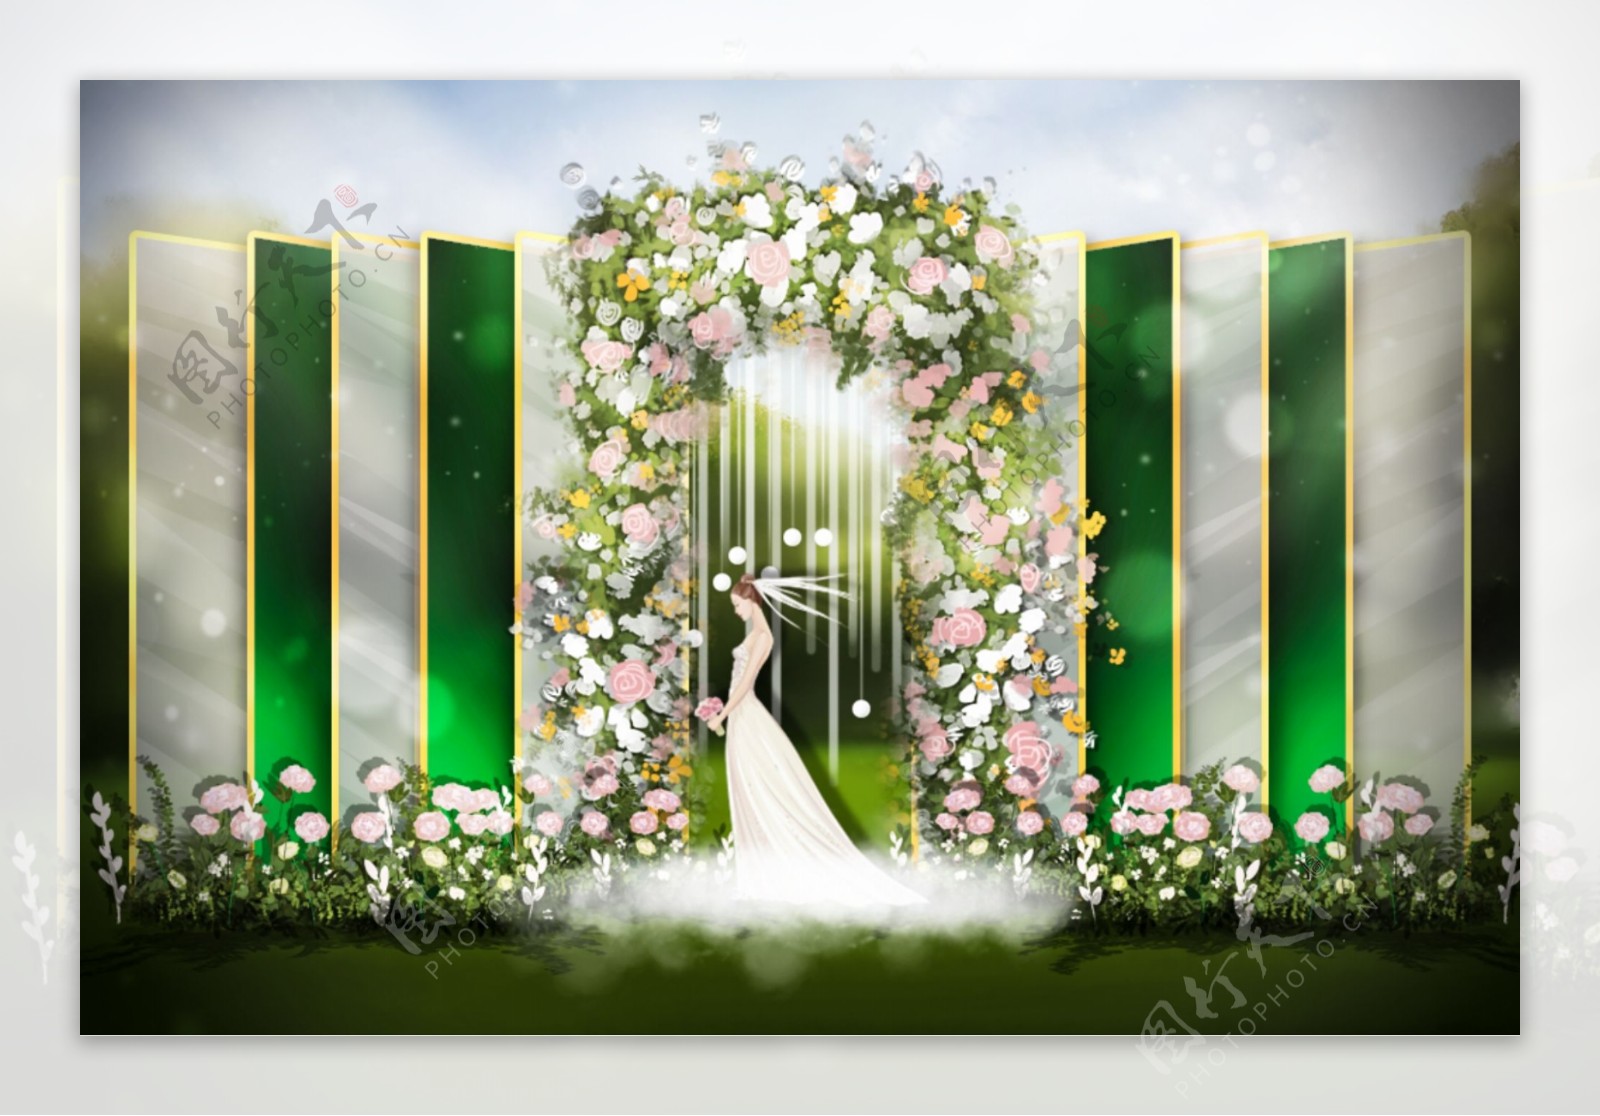 户外墨绿玻璃材质拱门婚礼效果图